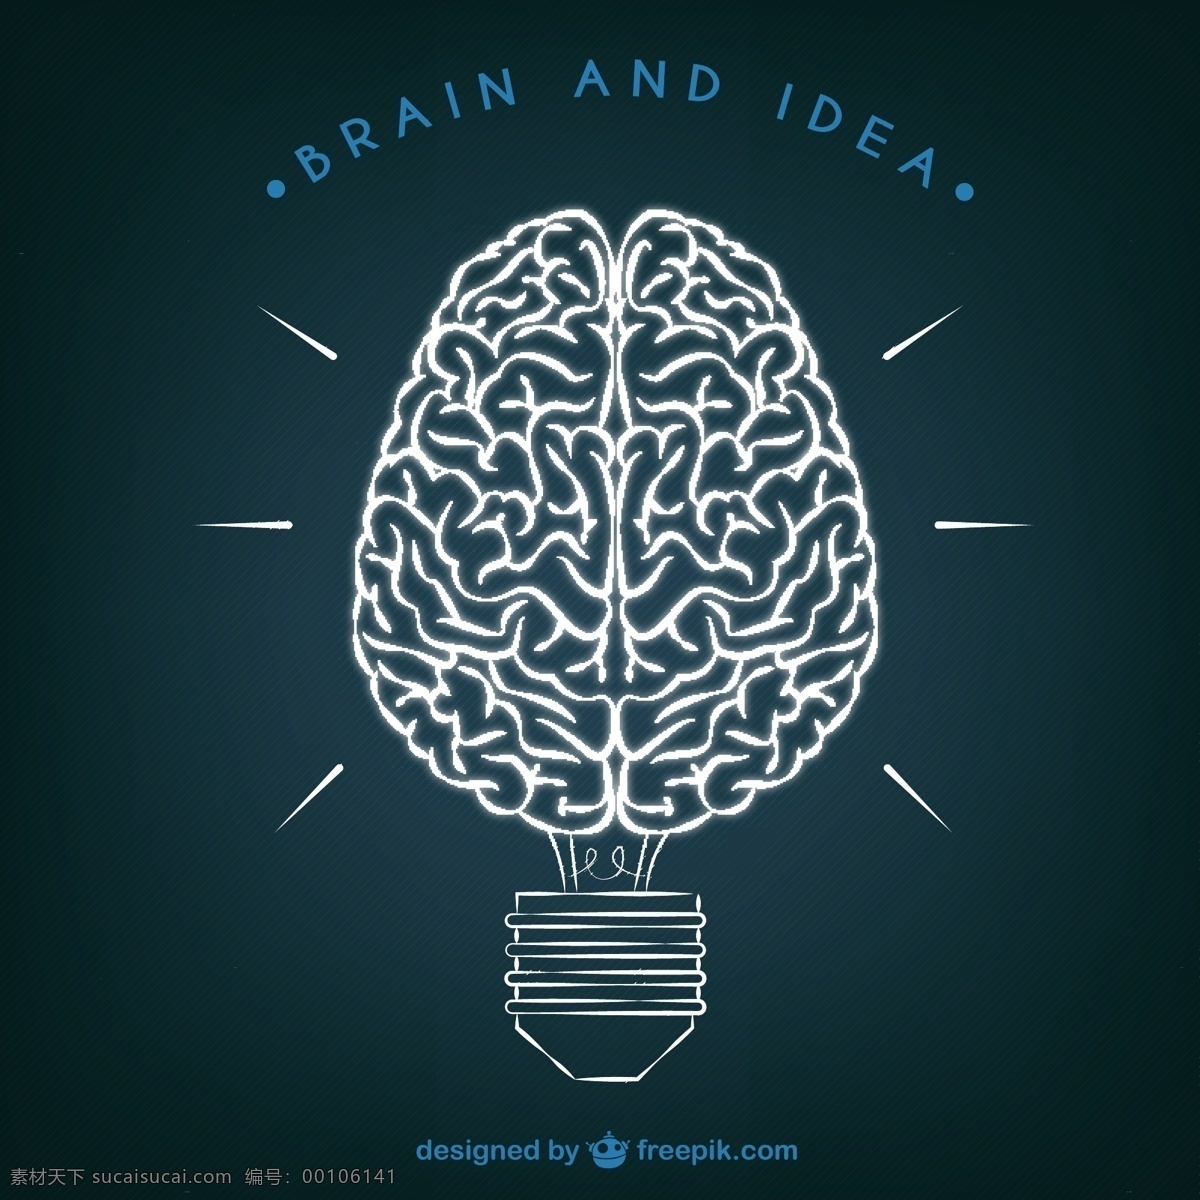 脑与思想插图 大脑 技术 光 健康 思想 科学 人 灯泡 医学 创新 头脑 插图 创造力 心理学 概念 智力 黑色